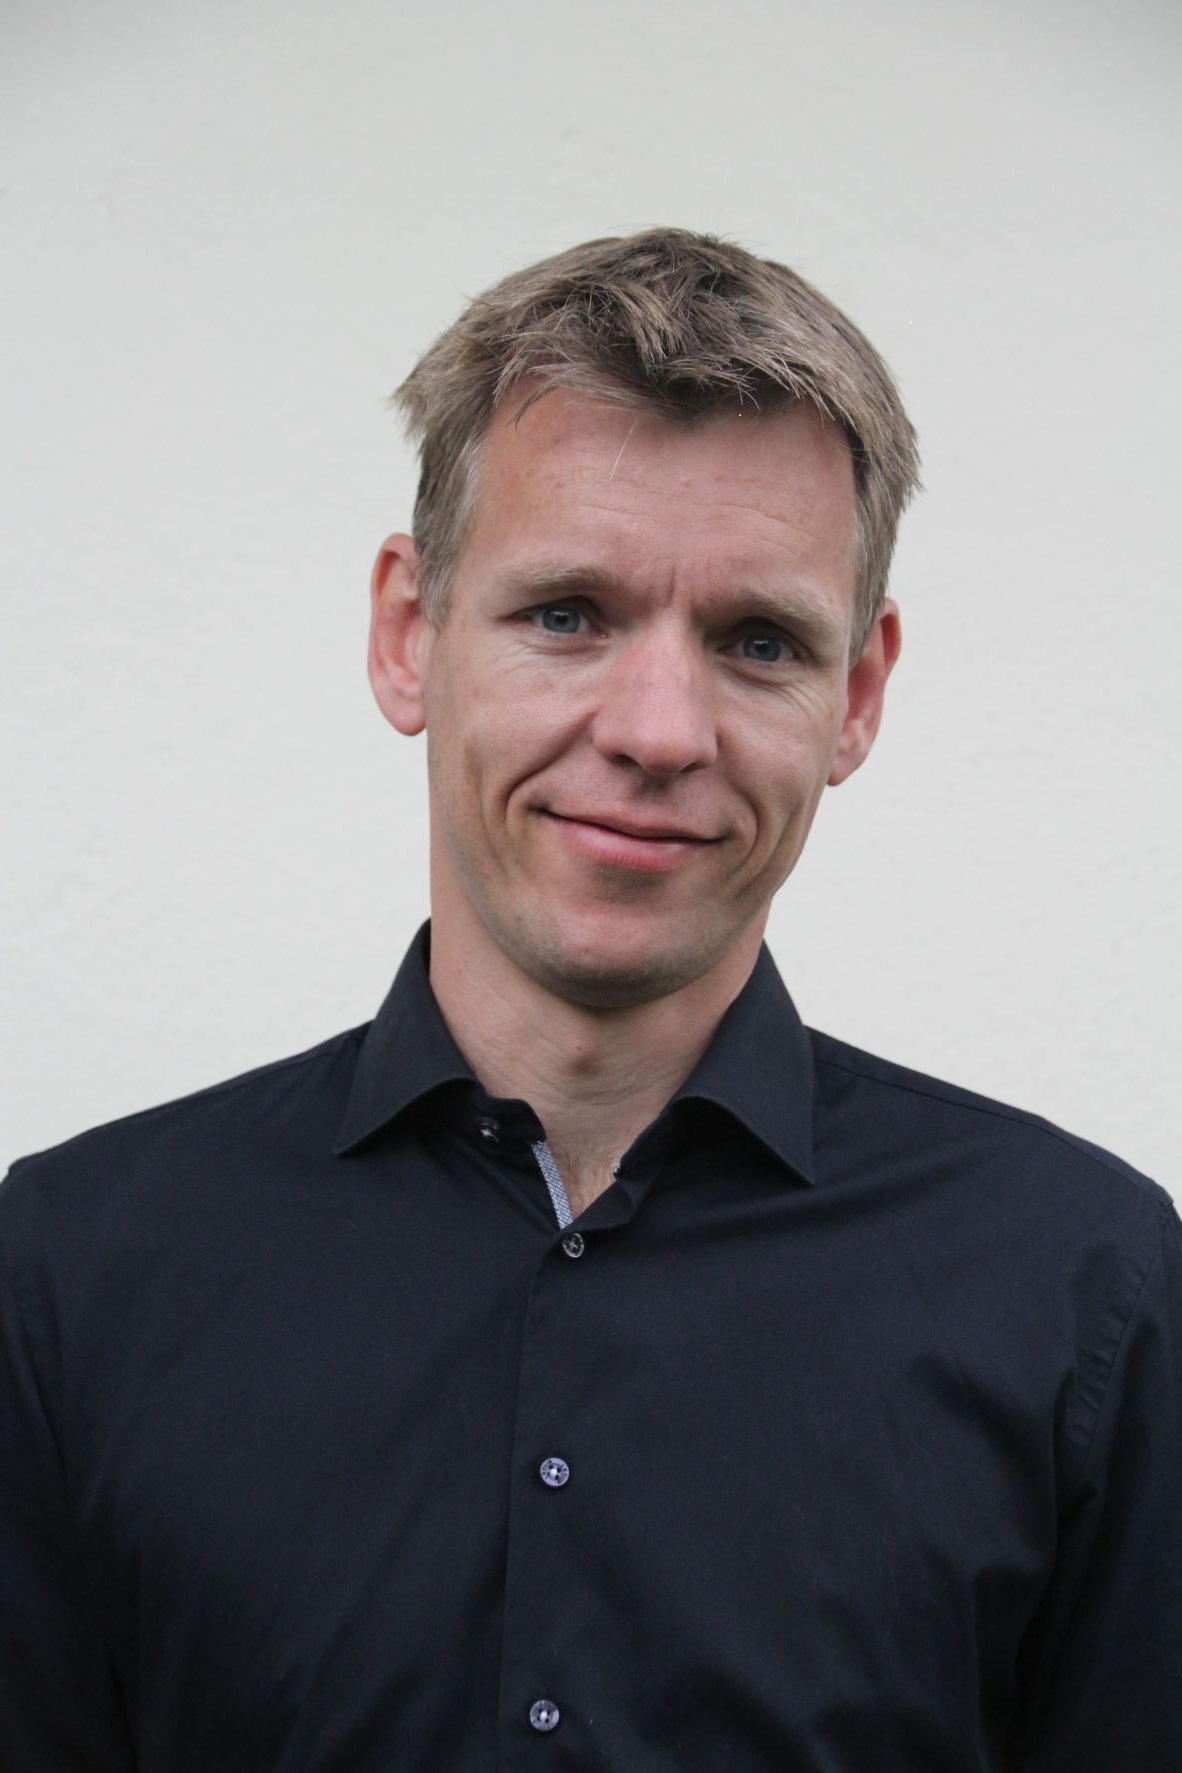 Julian van Basten, Manager Engineering at Raster